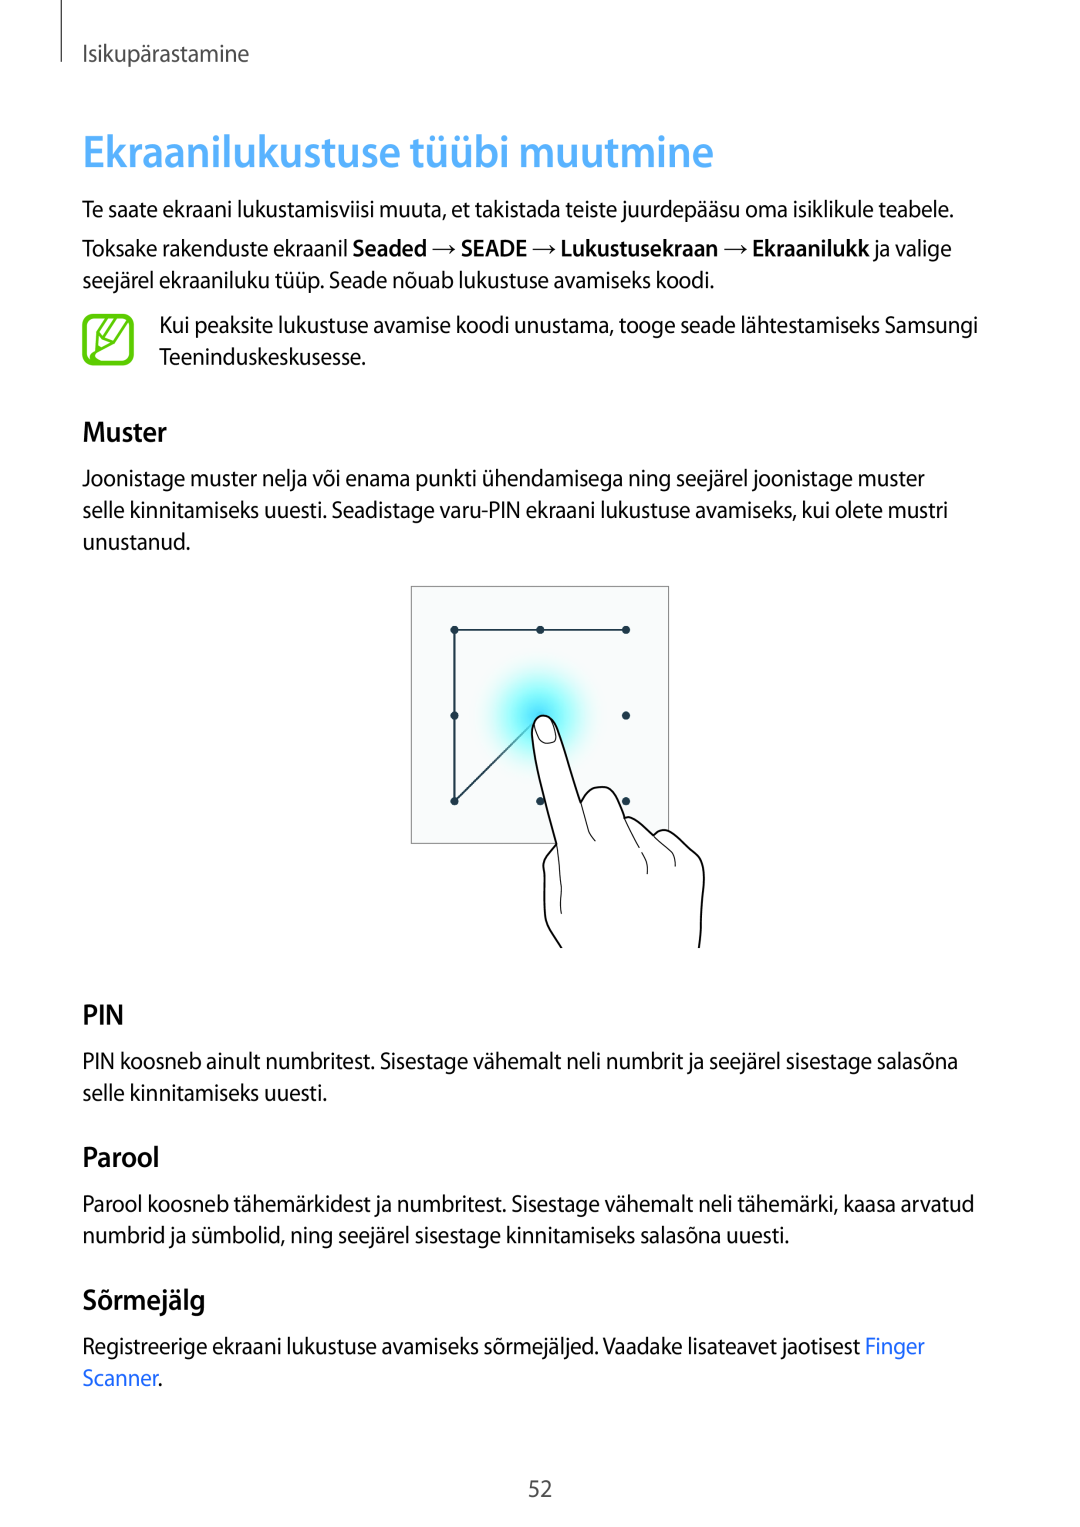 Samsung SM-T700NZWASEB, SM-T700NTSASEB manual Ekraanilukustuse tüübi muutmine, Muster, Parool, Sõrmejälg, Isikupärastamine 